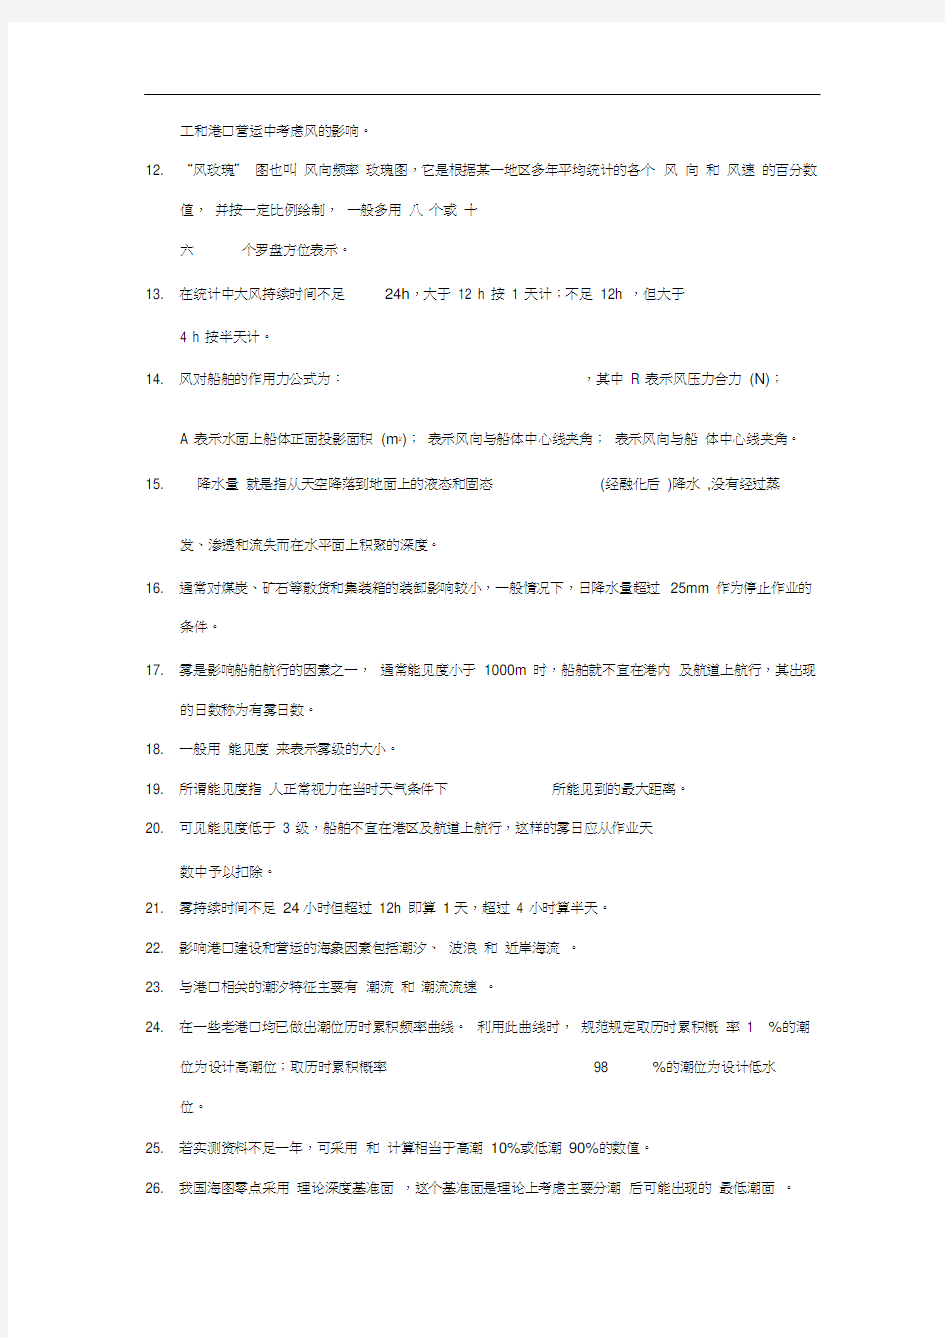 上海海事大学港航工程必看填空题(部分答案已填写)解析